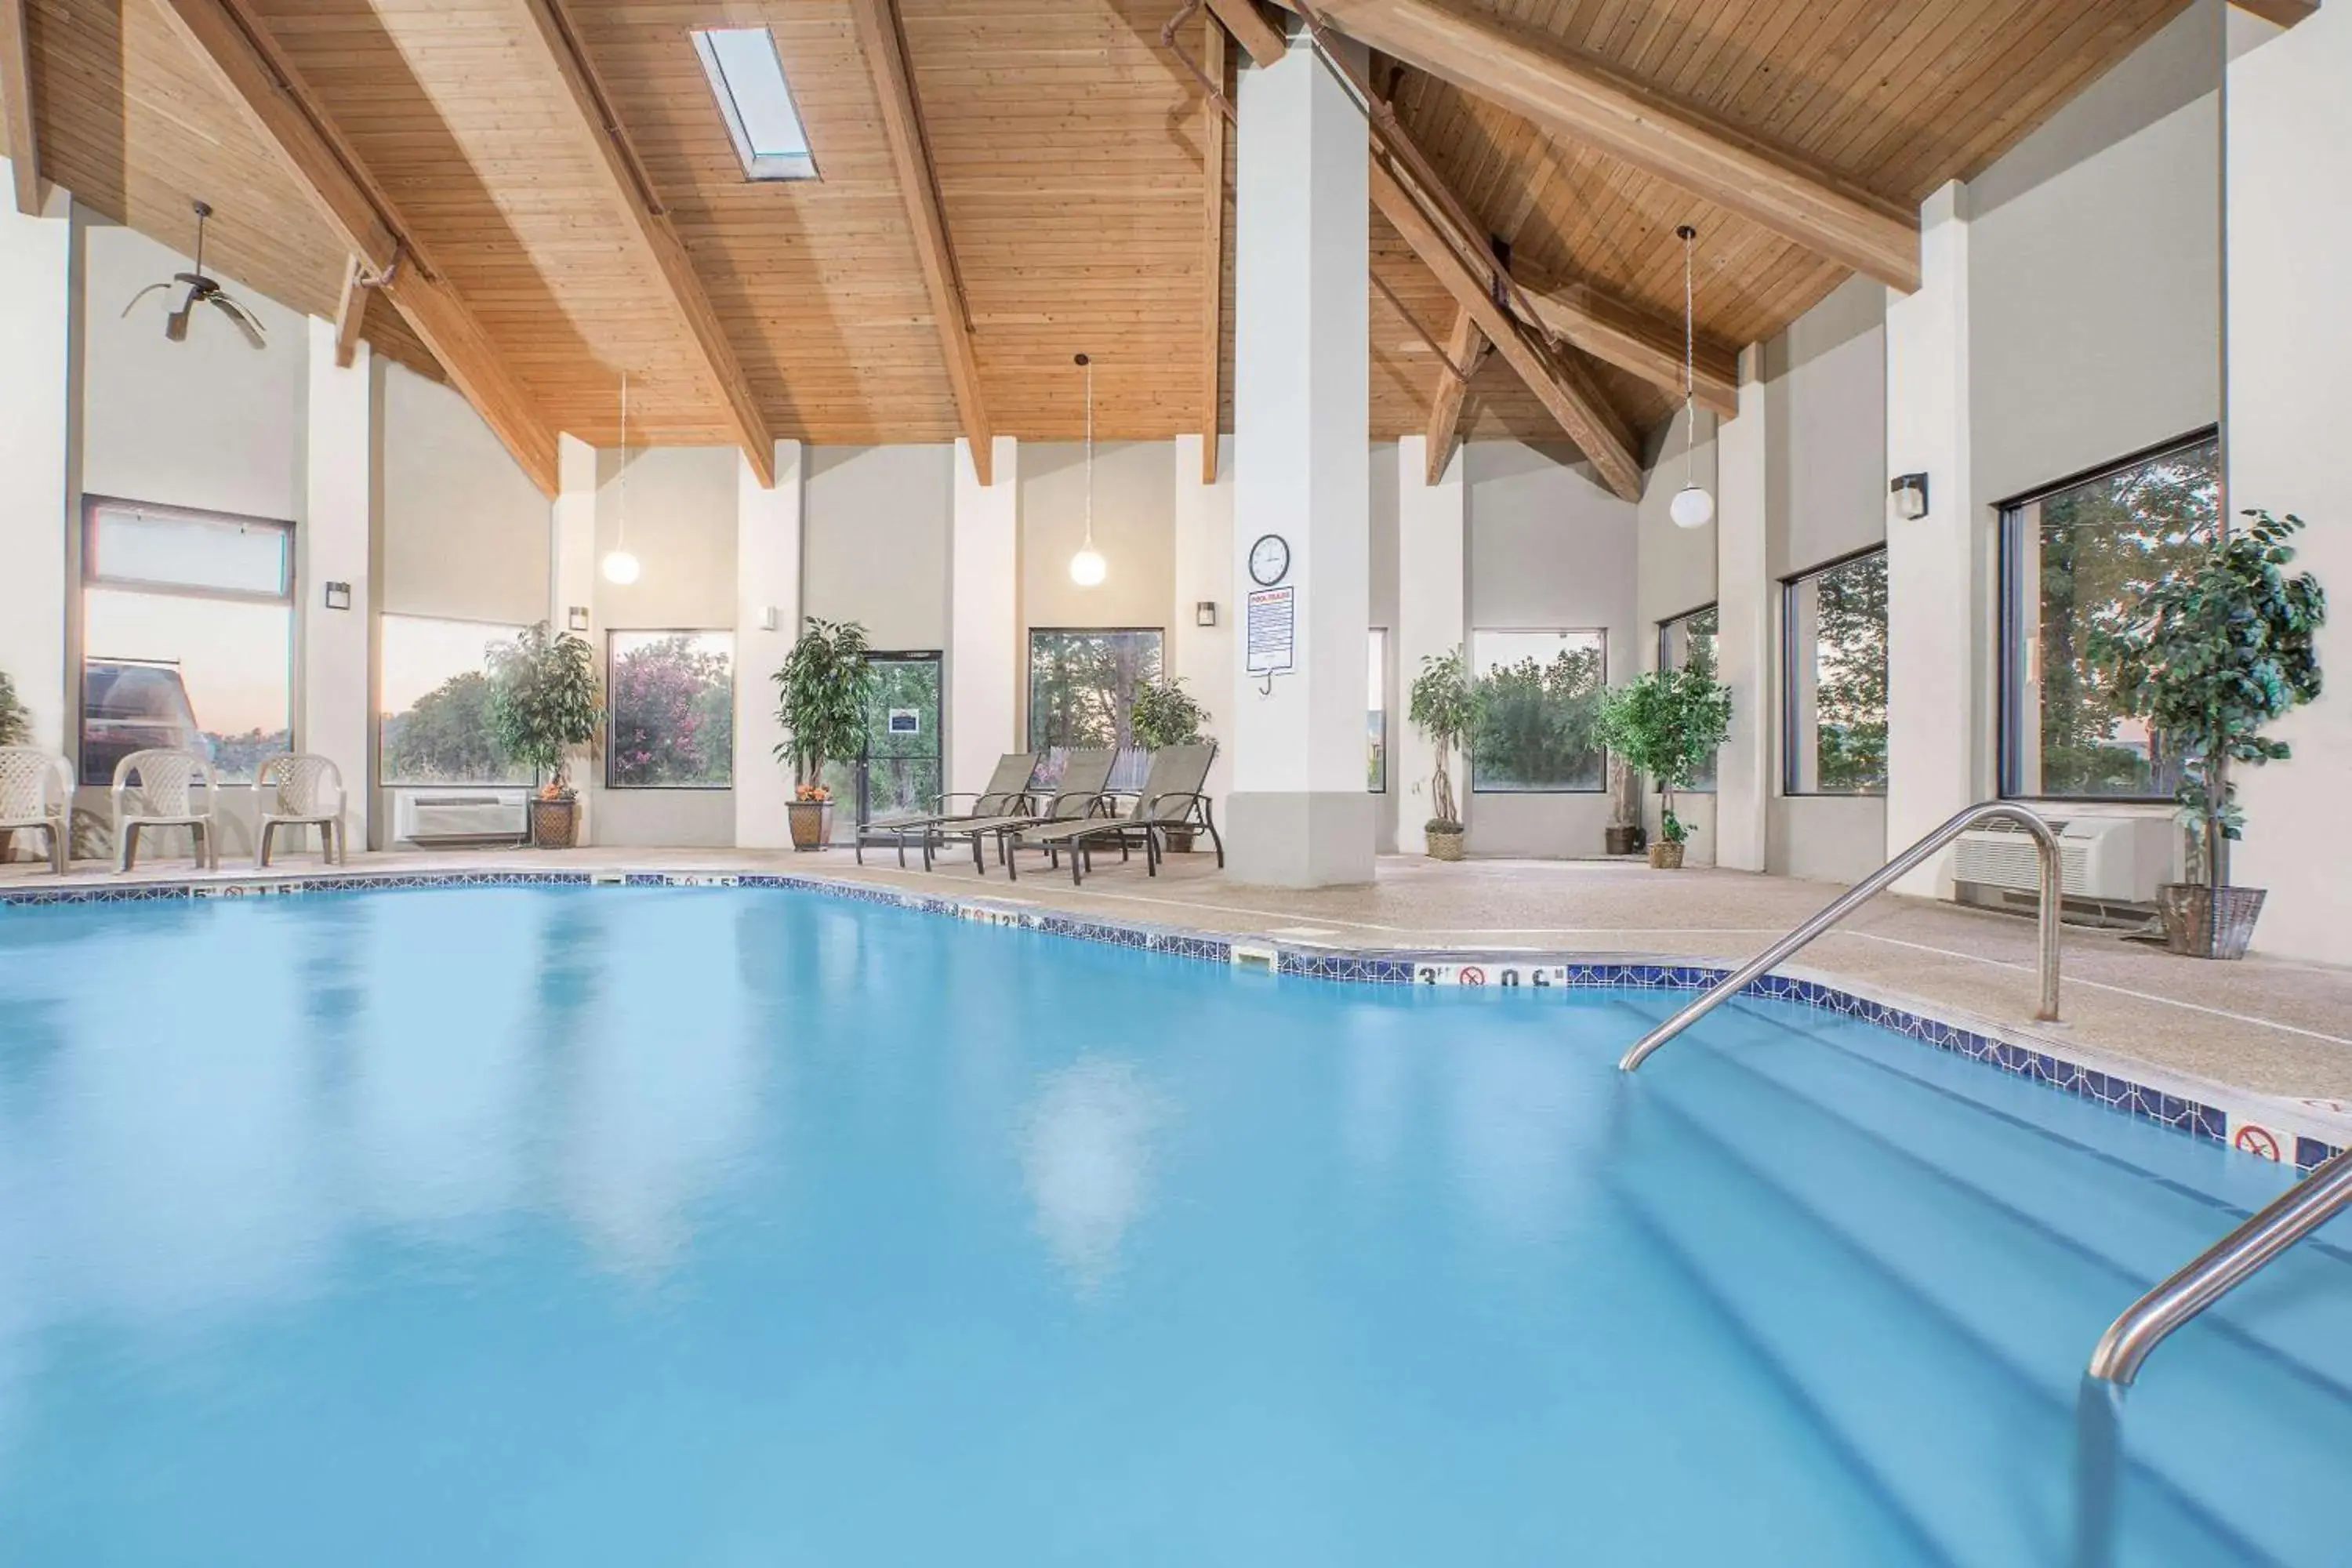 On site, Swimming Pool in Days Inn & Suites by Wyndham Brinkley